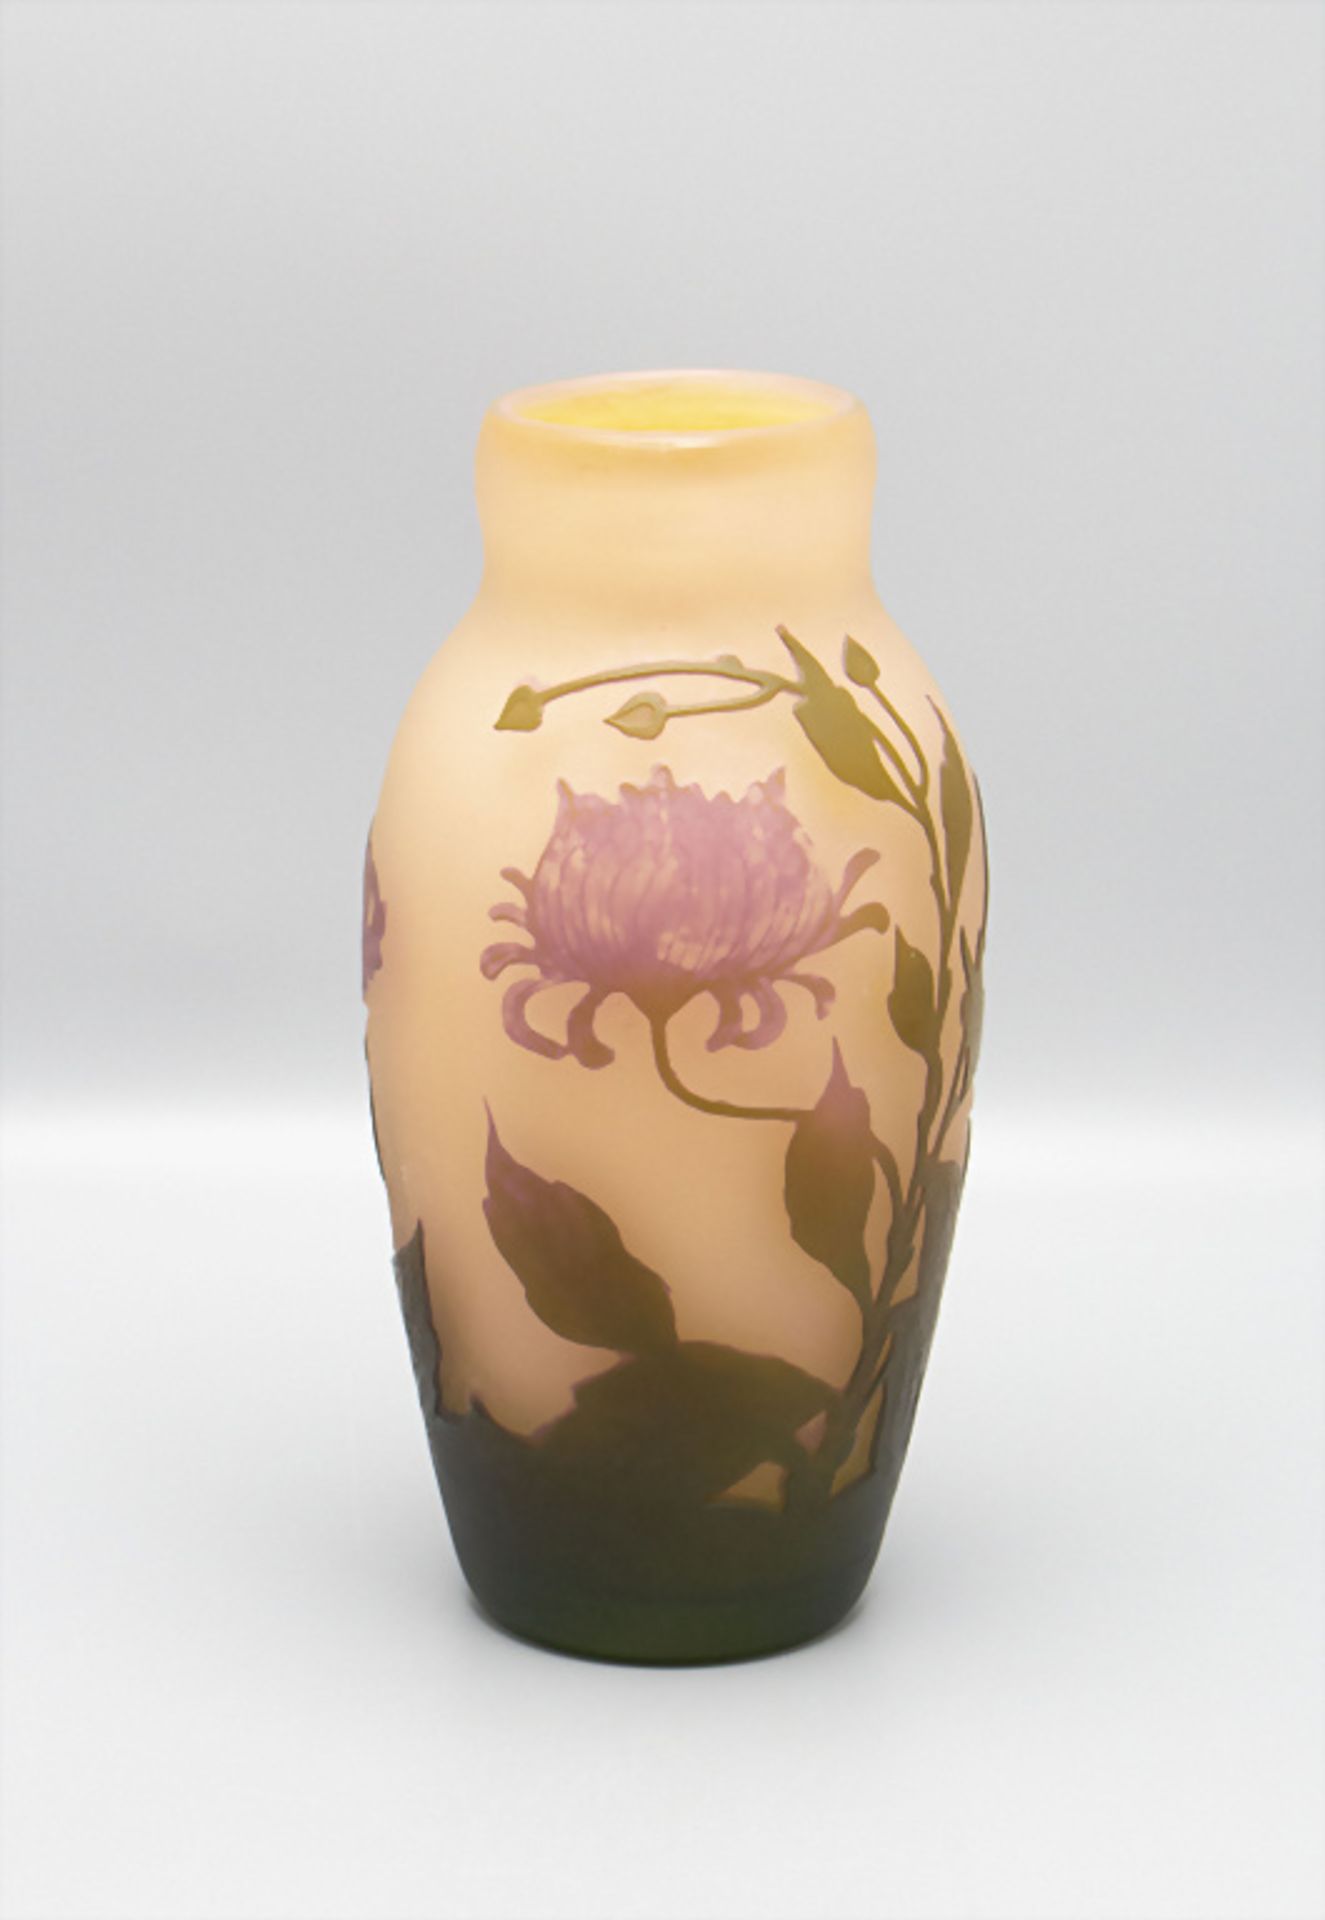 Jugendstil Vase, Arsall, Vereinigte Lausitzer Glaswerke AG, Weisswasser, 1921